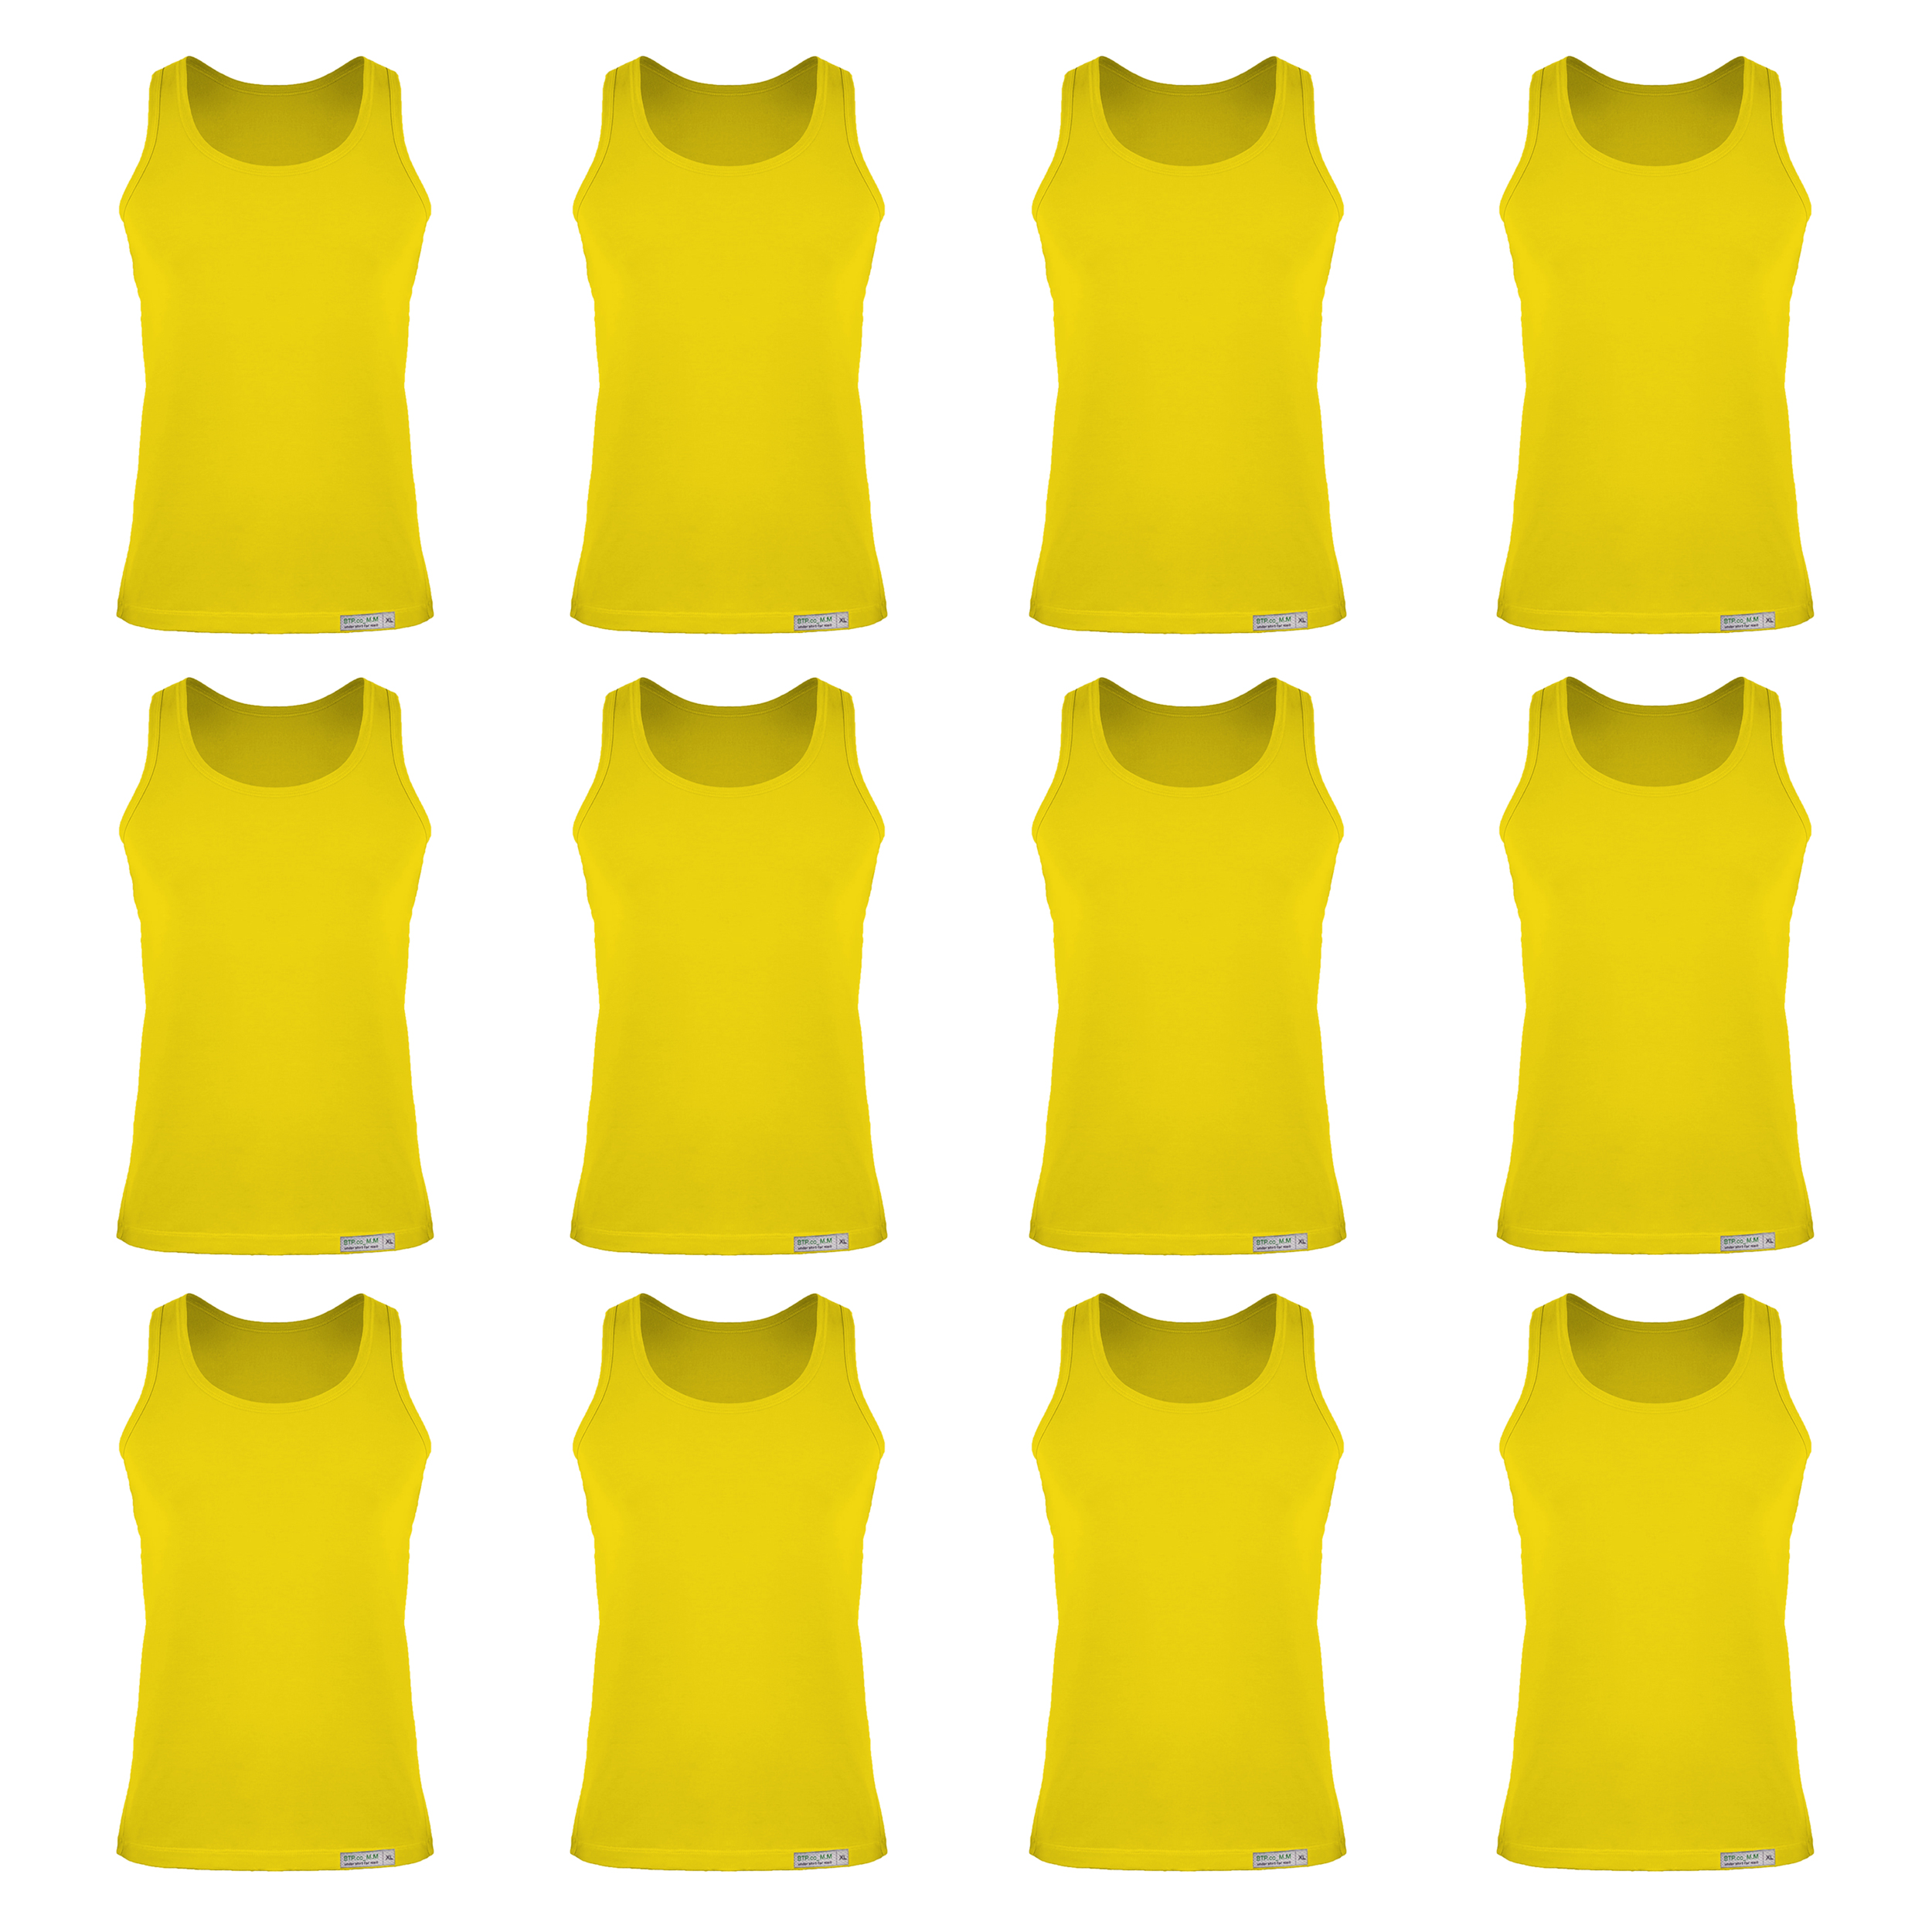 زیرپوش رکابی مردانه برهان تن پوش مدل 5-01 بسته 12 عددی رنگ زرد